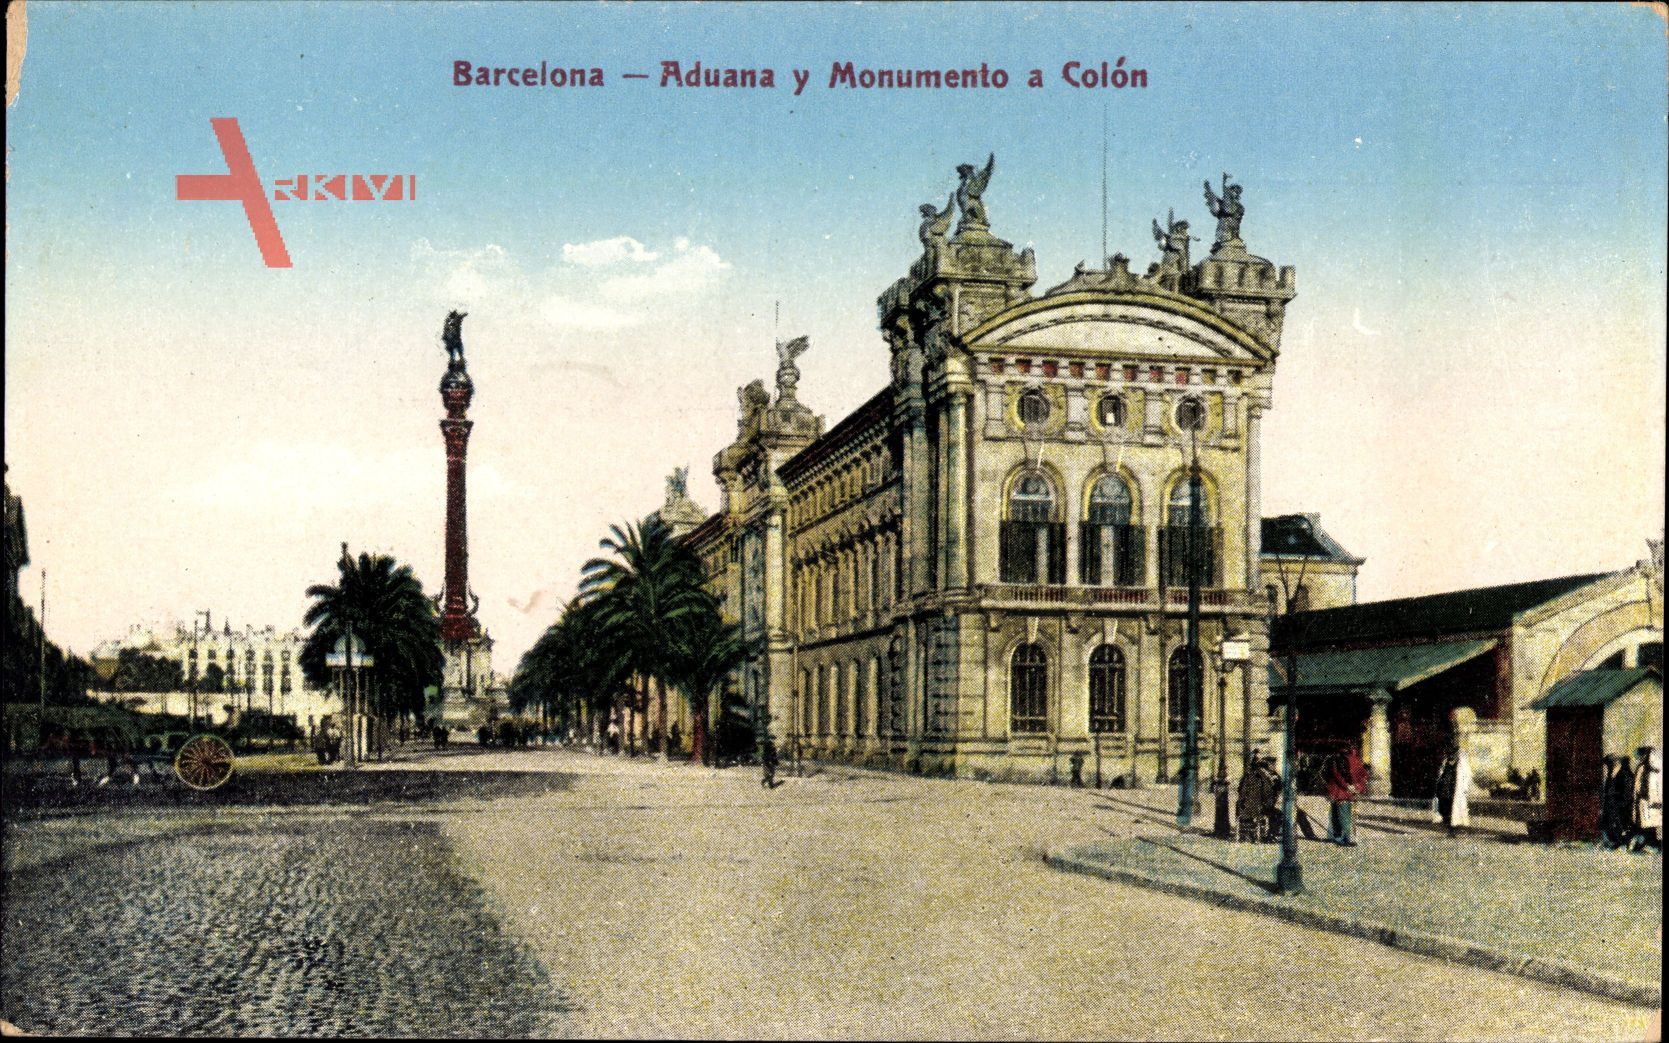 Barcelona Katalonien, Aduana y Monumento a Colon